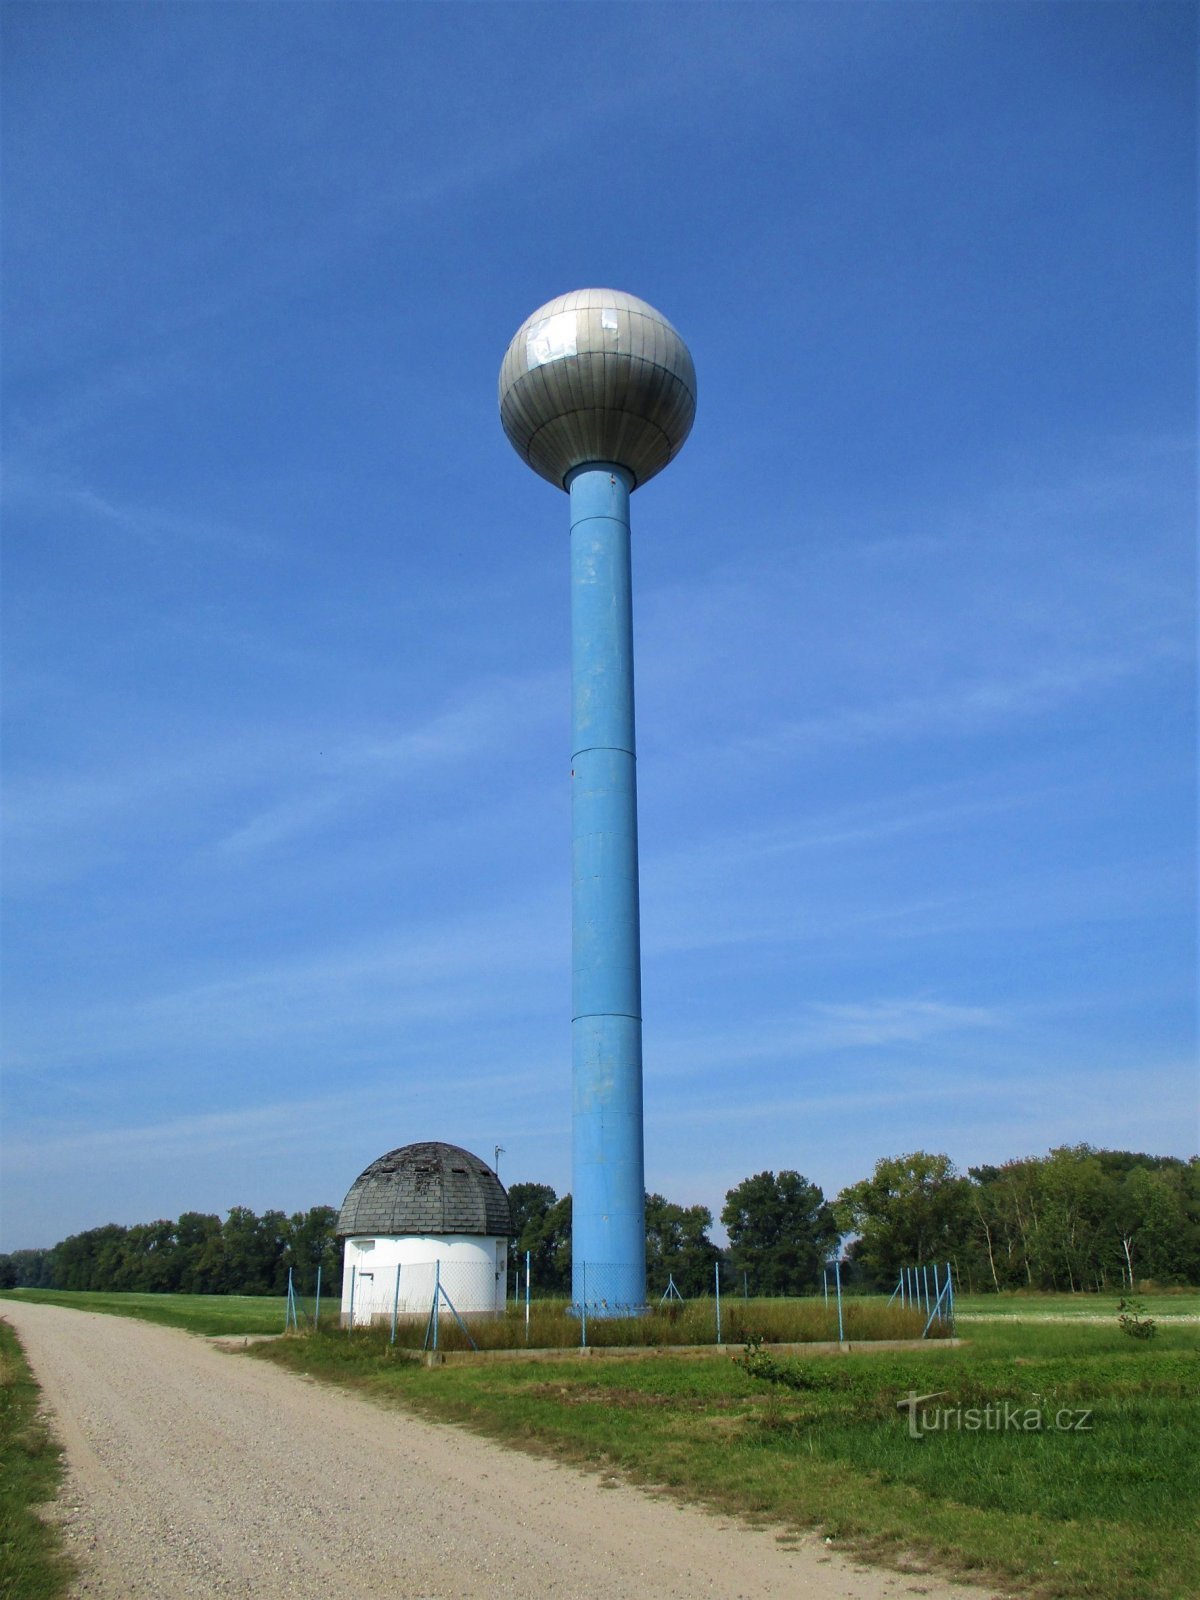 Depósito de agua de la torre Aquaglobus (Kratonohy, 13.9.2020/XNUMX/XNUMX)